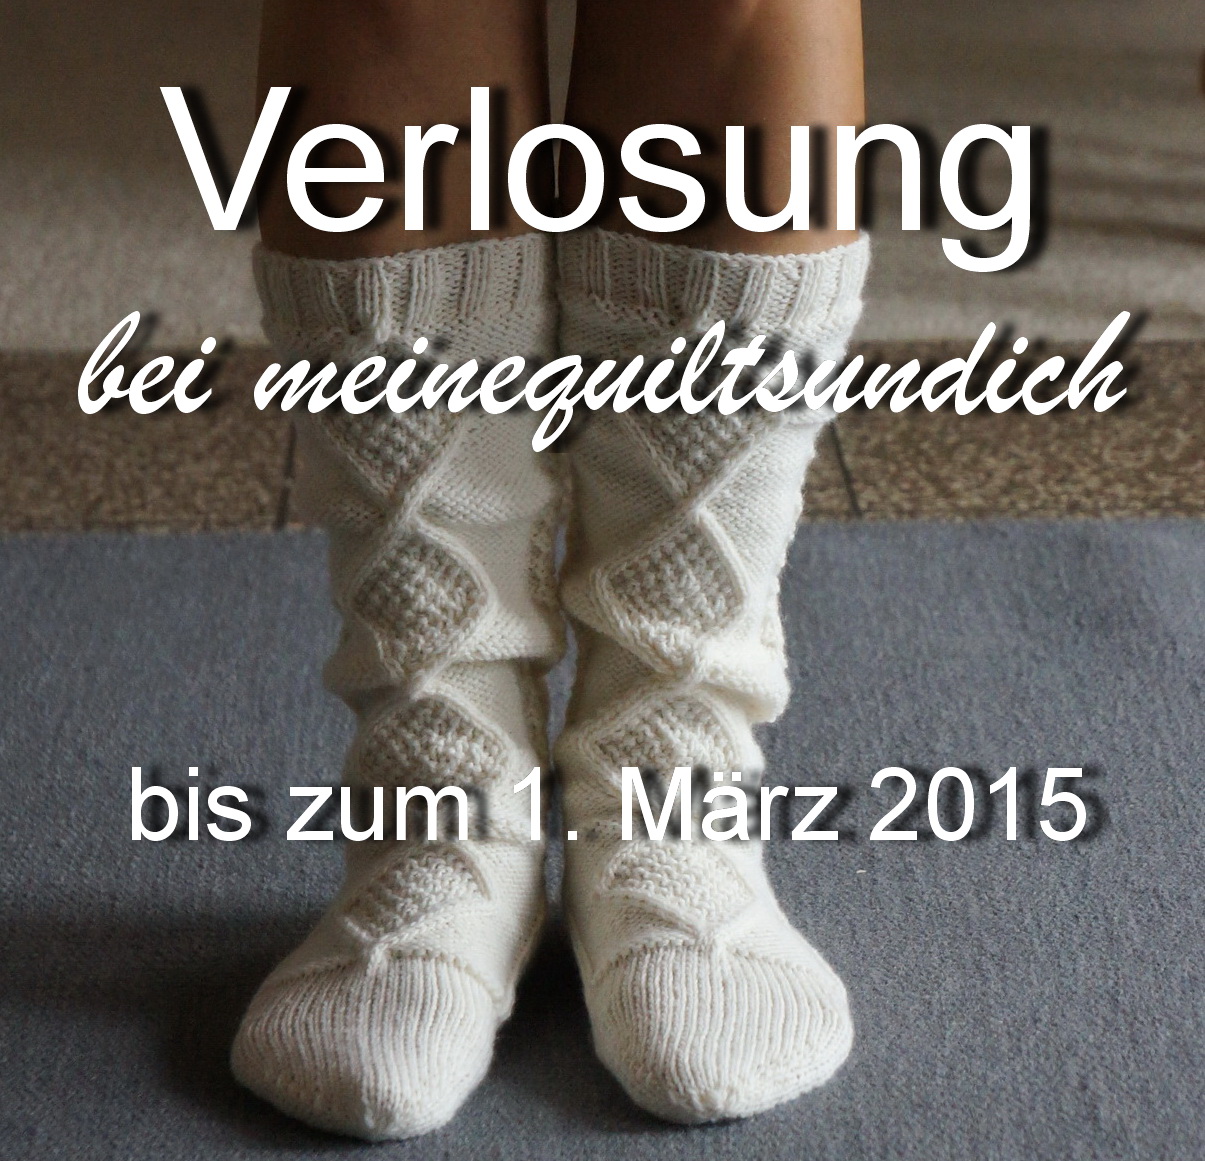 http://meinequiltsundich.blogspot.de/2015/02/verlosung.html